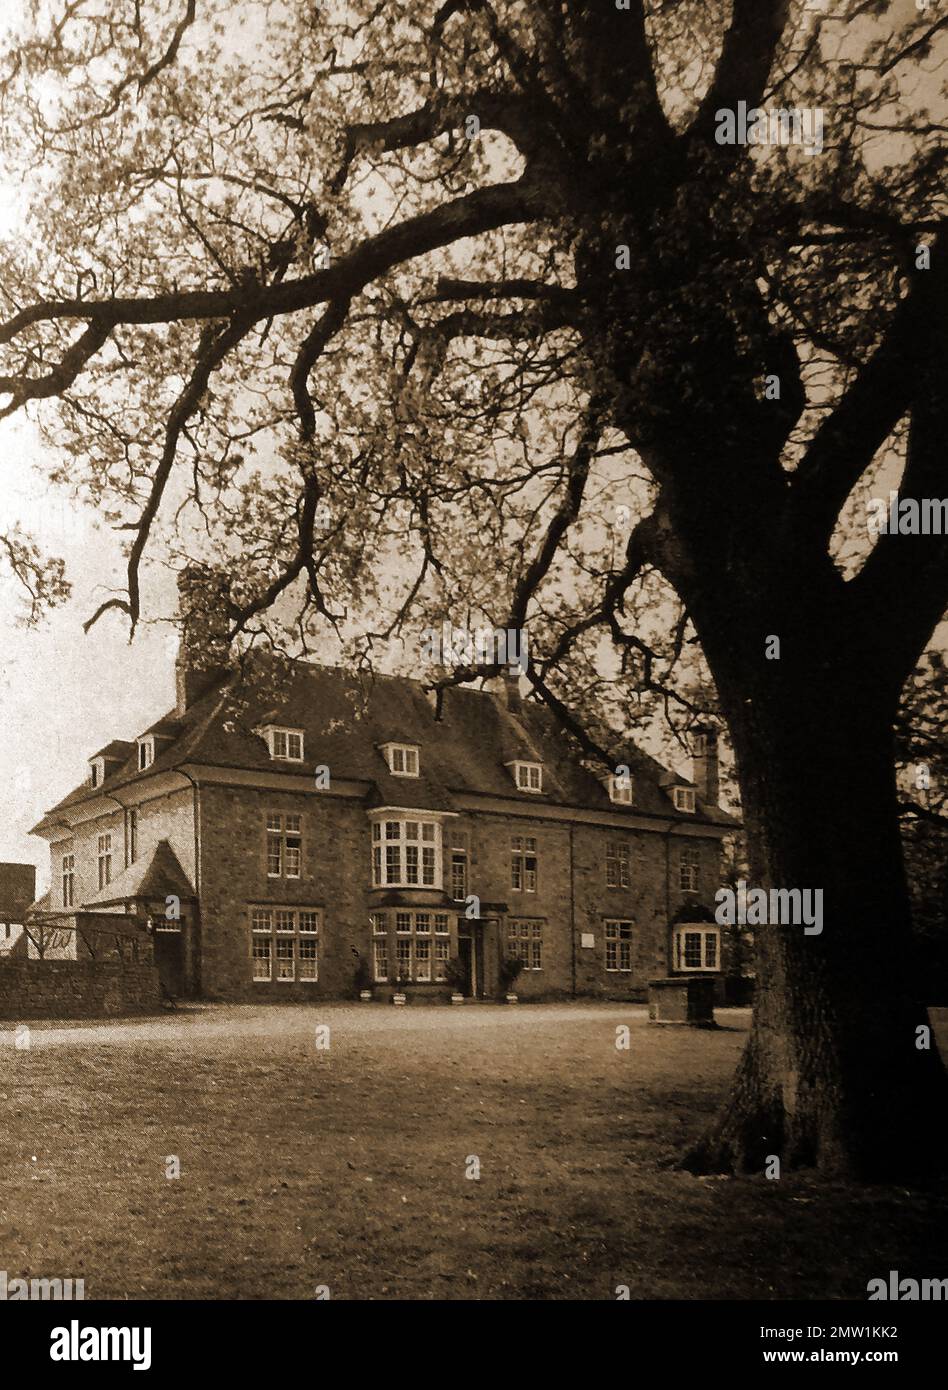 Britische Pubs Inns & Taverns - Ein etwa 1940 altes Foto des REDNERHAUSES im Forest of Dean, Großbritannien. Ursprünglich als Jagdhütte für Karl II. Erbaut. Später fand dort das „Court of the Speech“ statt, ein lokales parlament, das den lokalen Wald, Wild und Bodenschätze verwaltet. Um 1840 wurde es zu einem Gasthaus und heute ist es ein beliebtes Hotel, Stockfoto